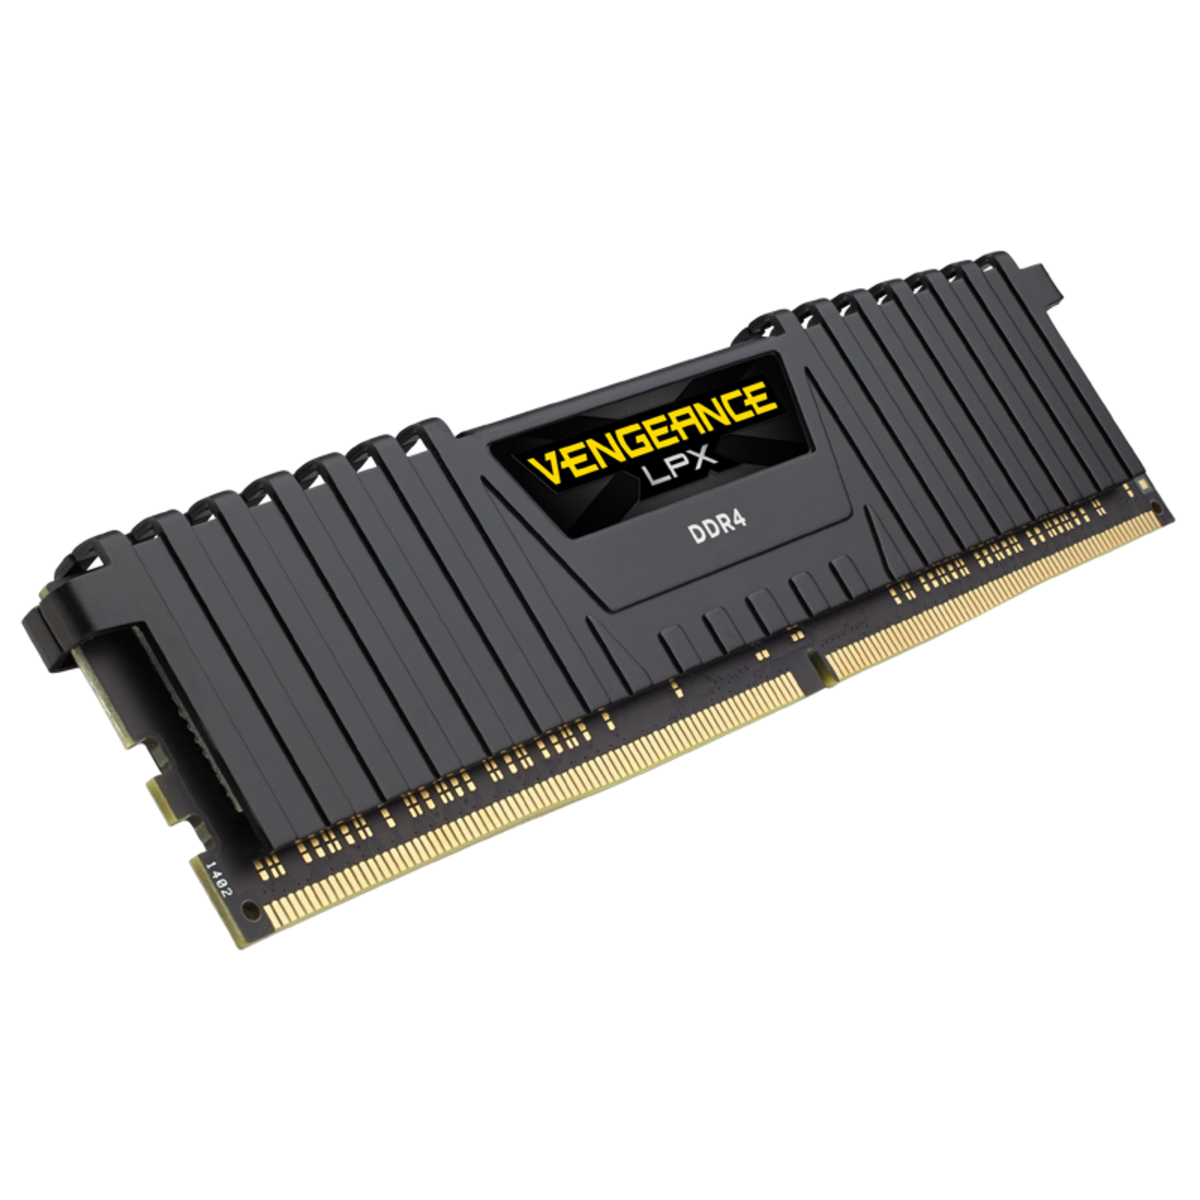 MEMORIA DDR4 CORSAIR VENGEANCE LPX 8GB 2400 1x8 CMK8GX4M1A2400C16